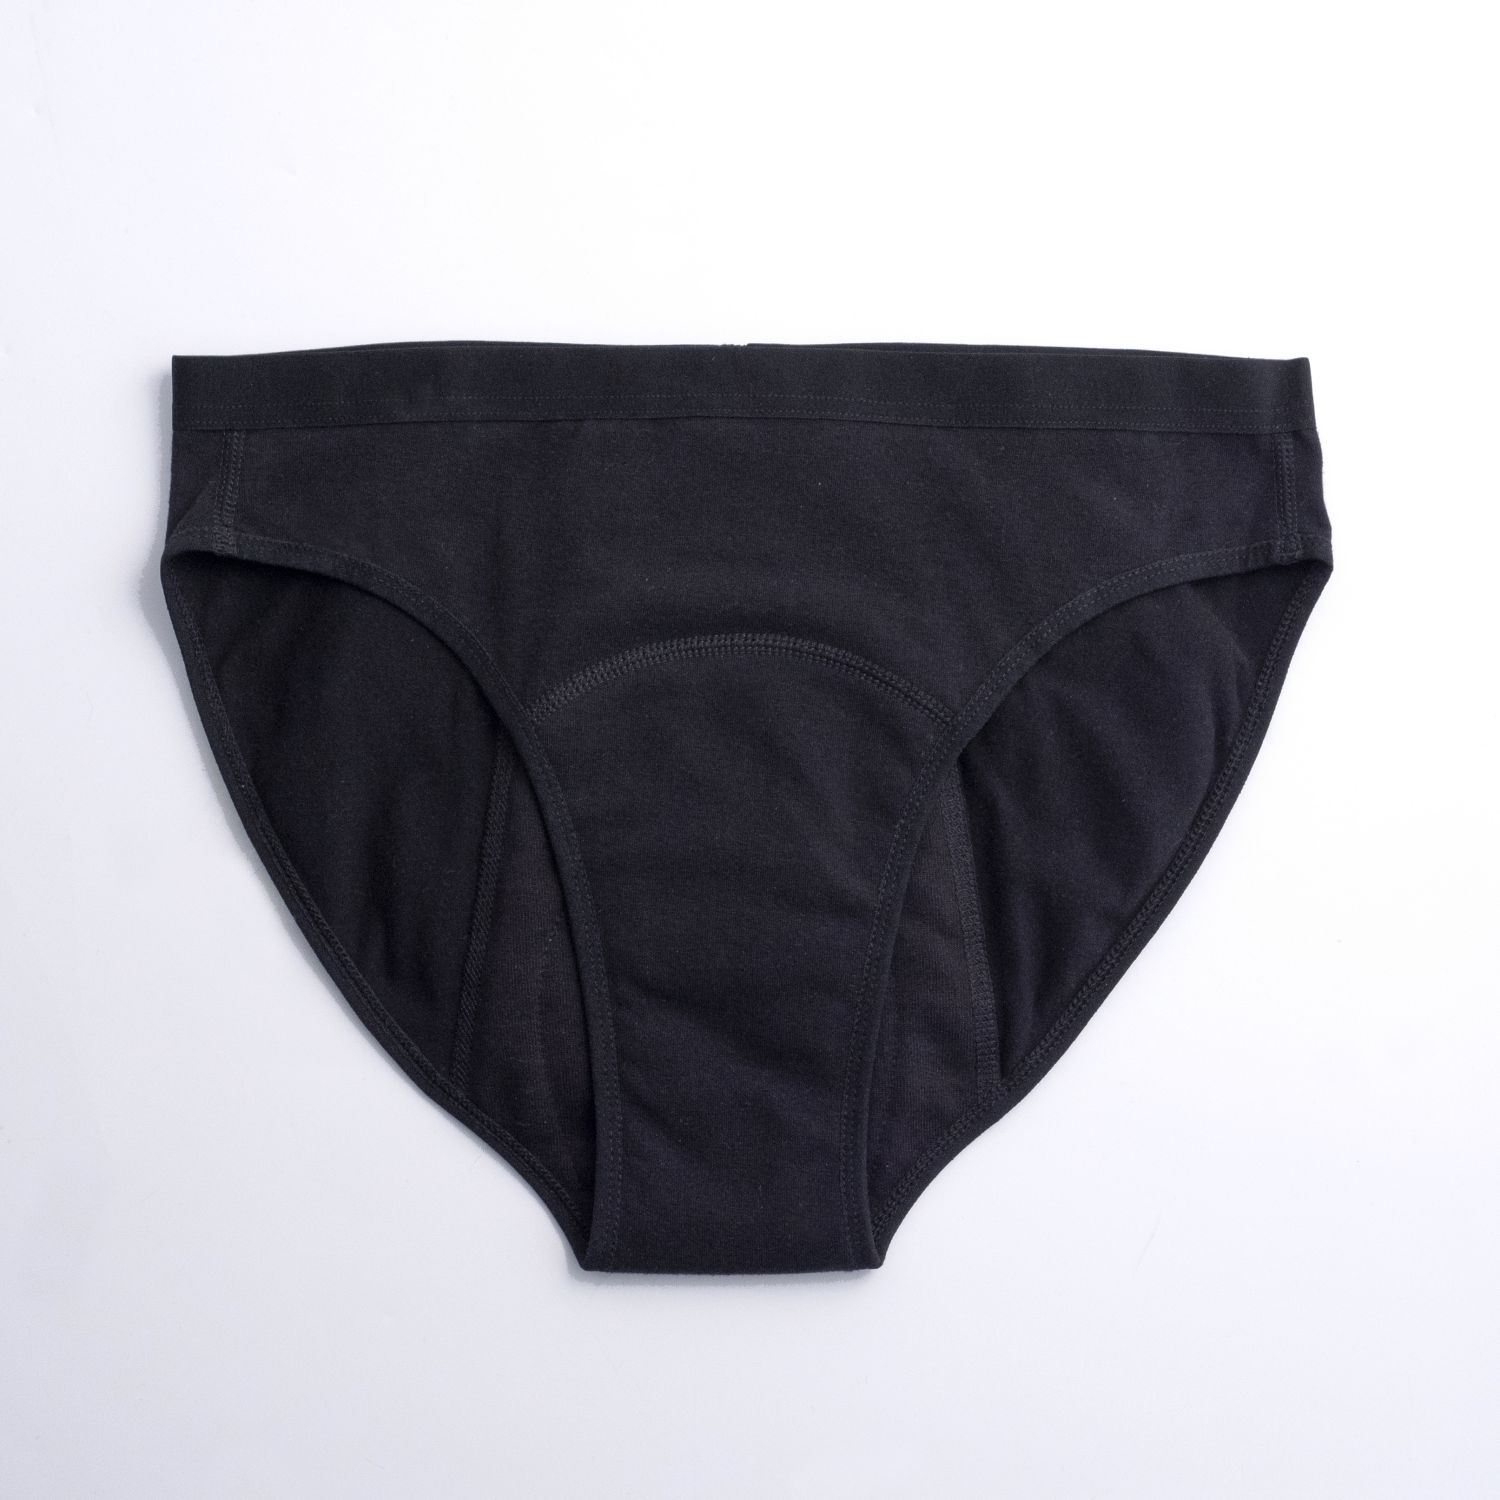 Imse (by ImseVimse) Period Underwear - Bikini Heavy Flow